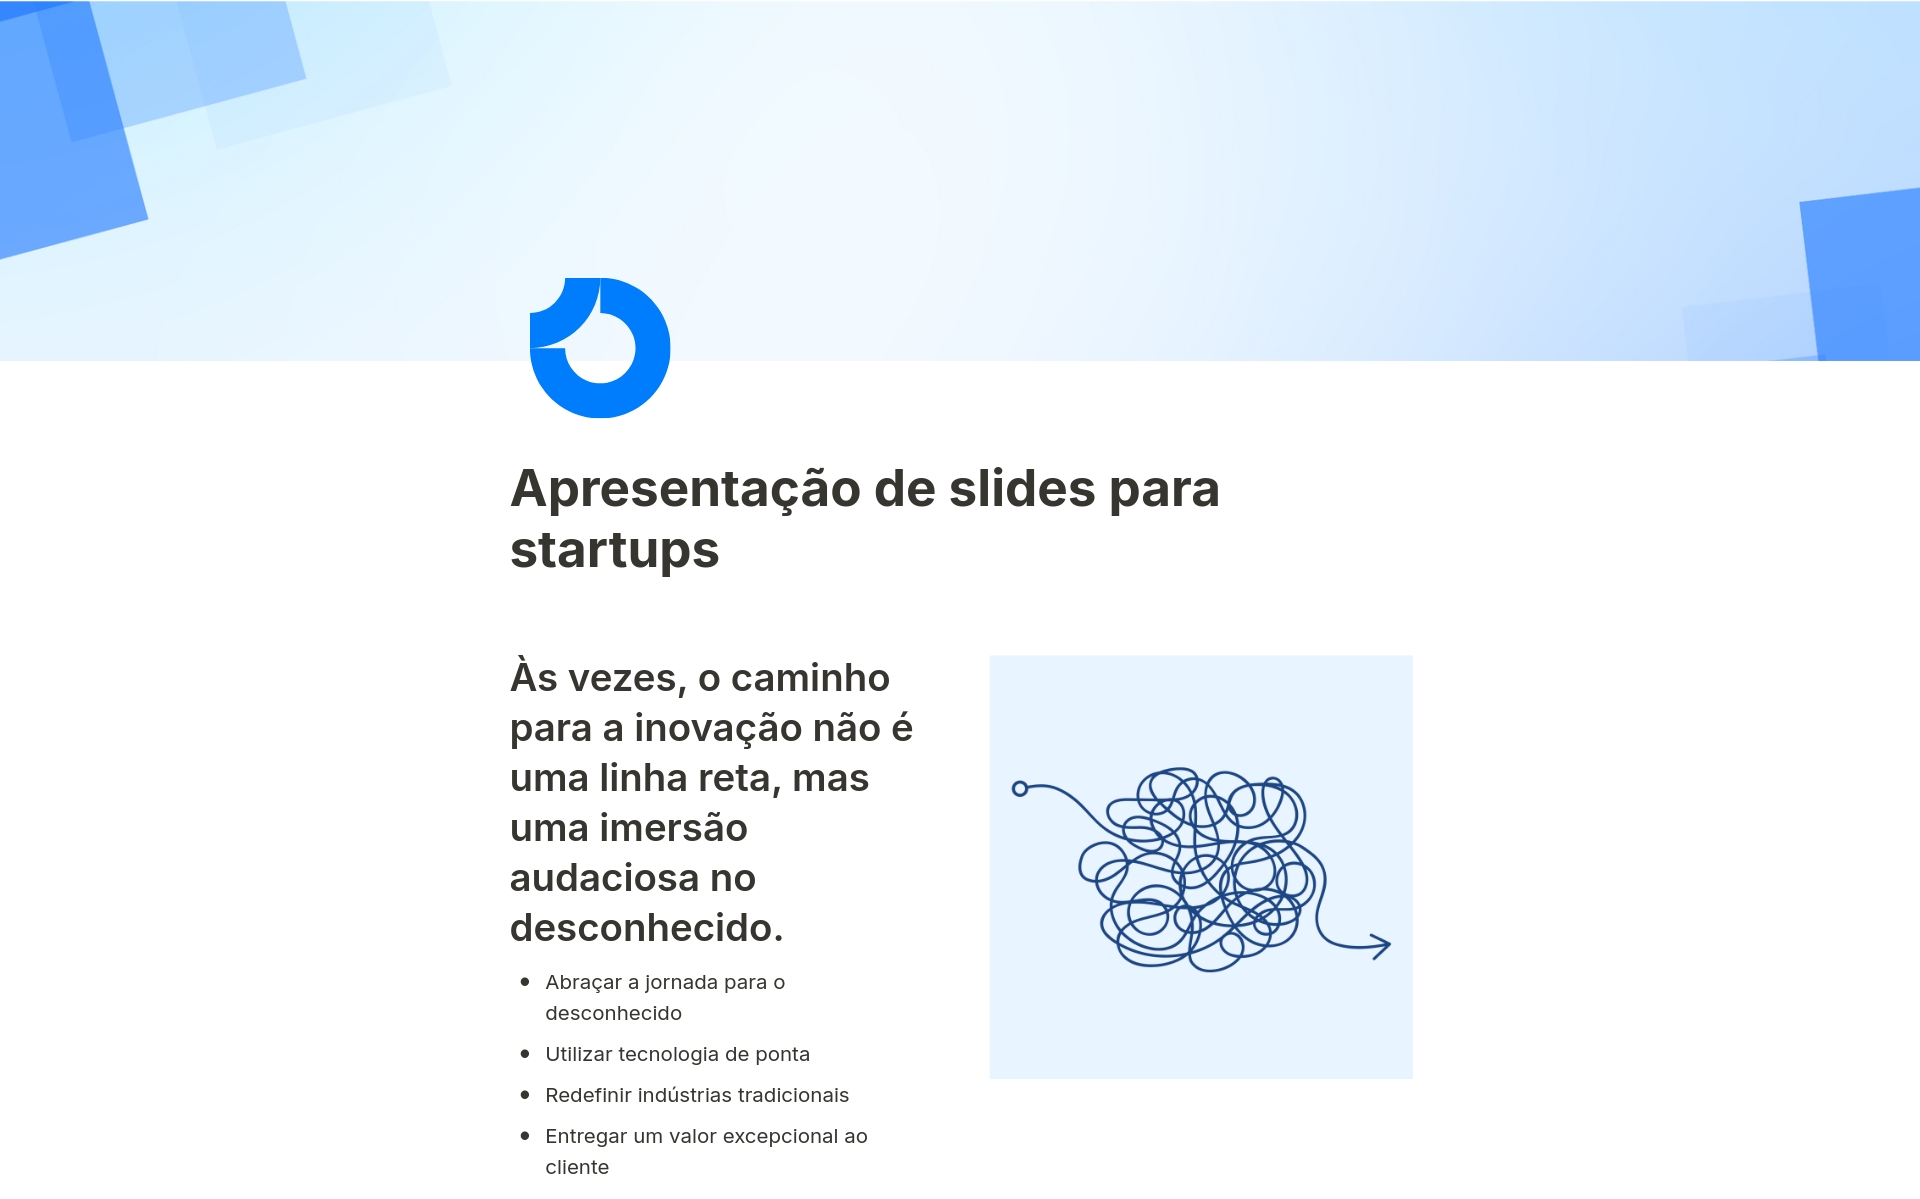 O modelo "Apresentação de slides para startups" do Notion oferece um formato elegante e eficaz para apresentar suas ideias e estratégias inovadoras de negócios.